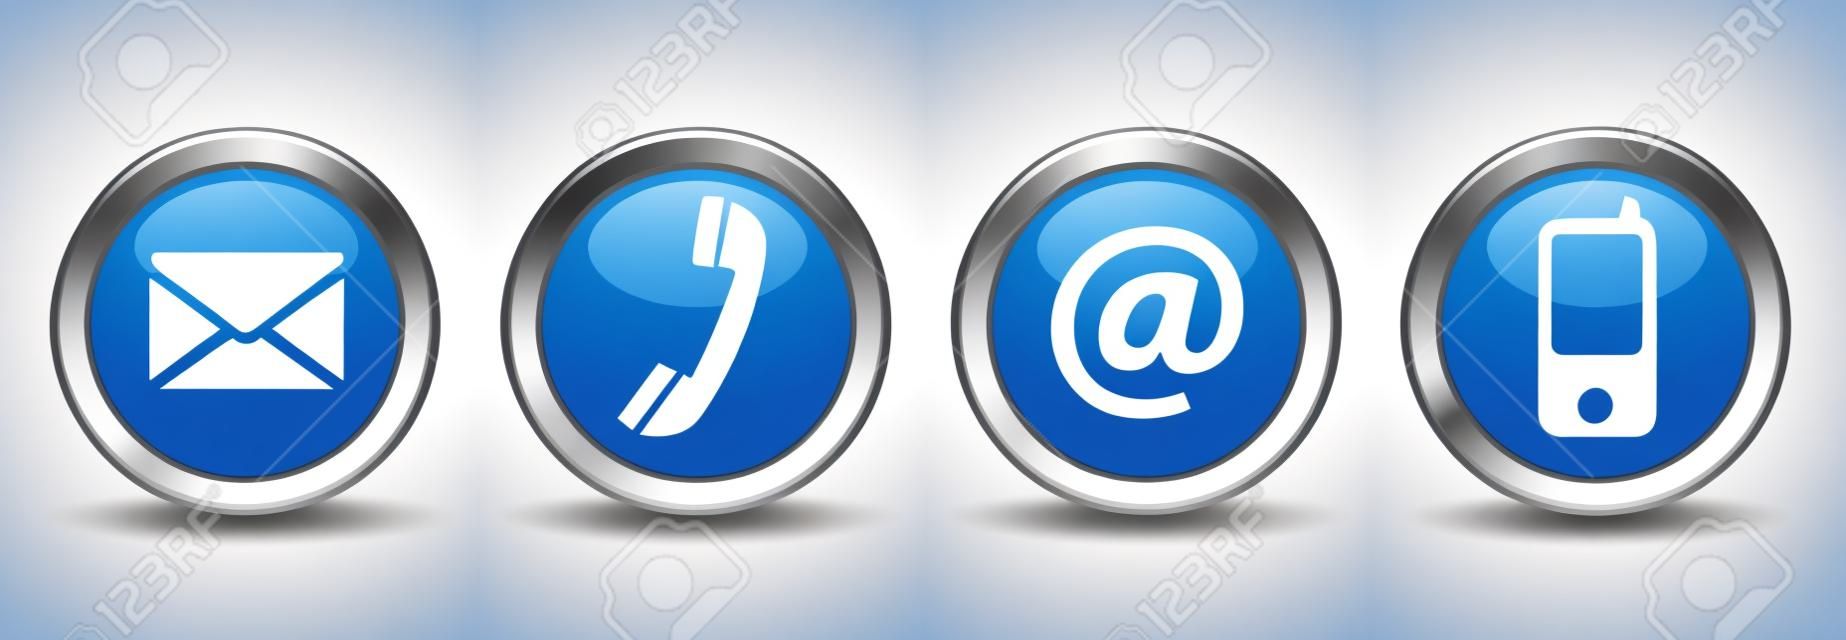 Póngase en contacto con nosotros botones web conjunto con el correo electrónico, en, teléfono y móvil iconos en azul insignia de plata del vector EPS 10 ilustración aislado sobre fondo blanco.